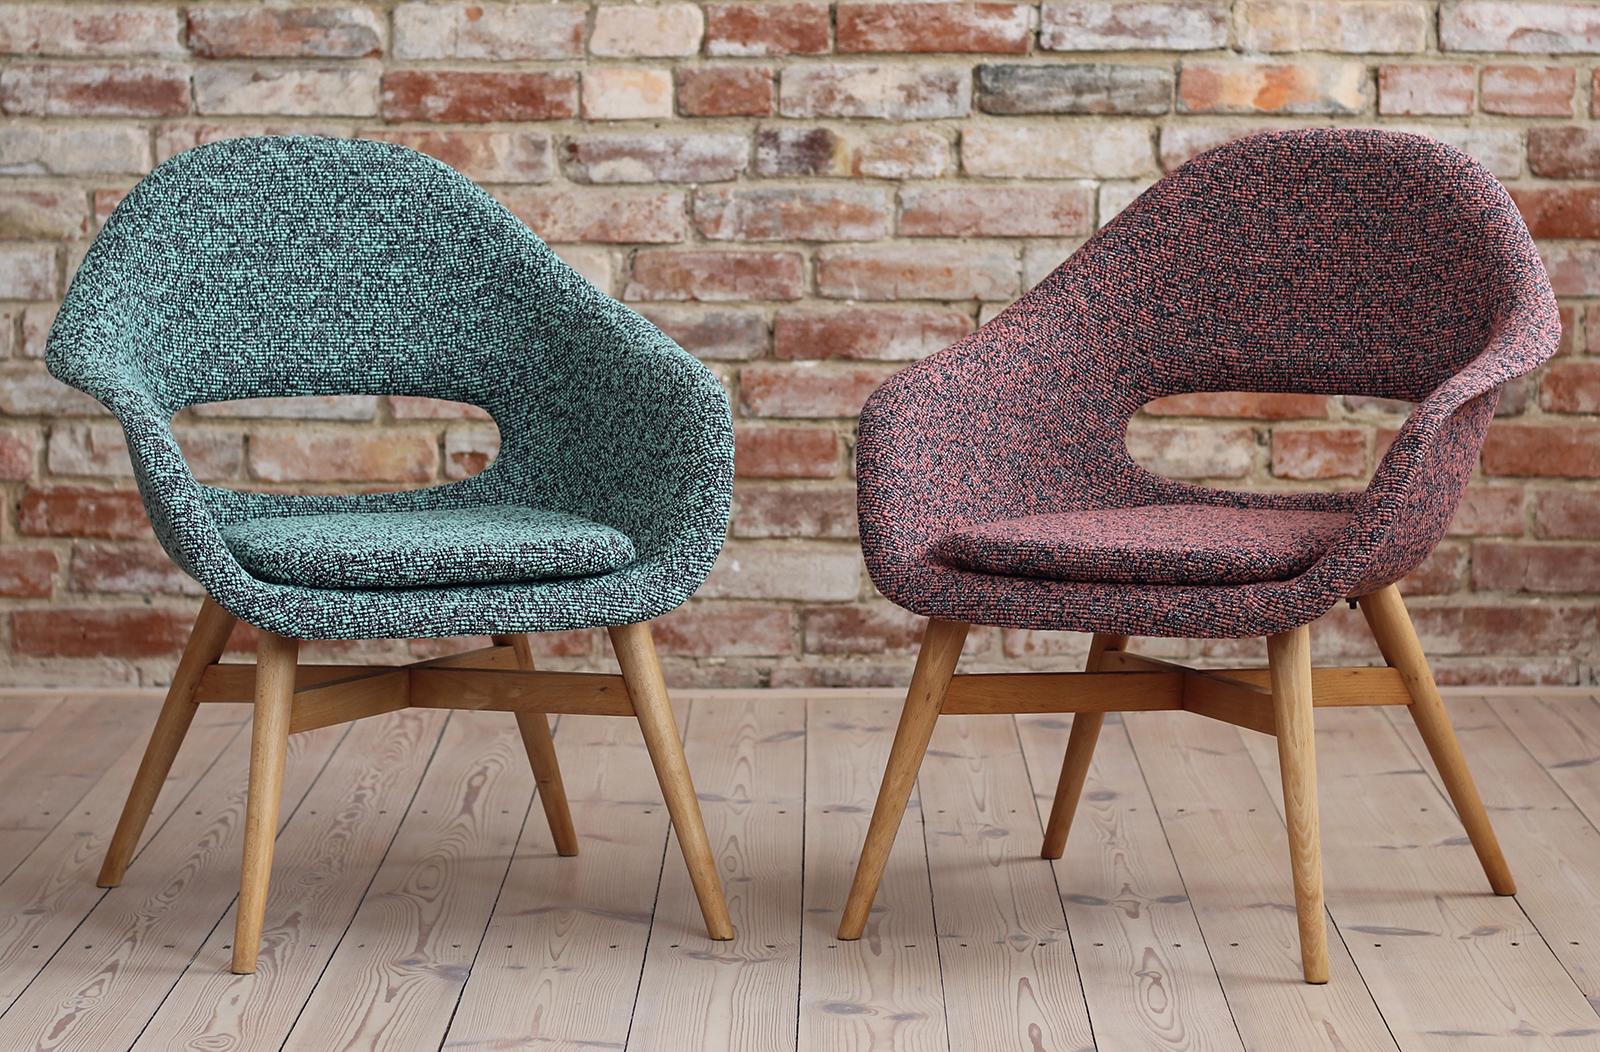 Cet ensemble de 2 chaises longues a été conçu dans les années 1950 par Miroslav Navrátil en République tchèque. Il se compose d'une coque en fibre de verre et d'une base en bois. La pièce a été rénovée et retapissée avec un tissu de haute qualité